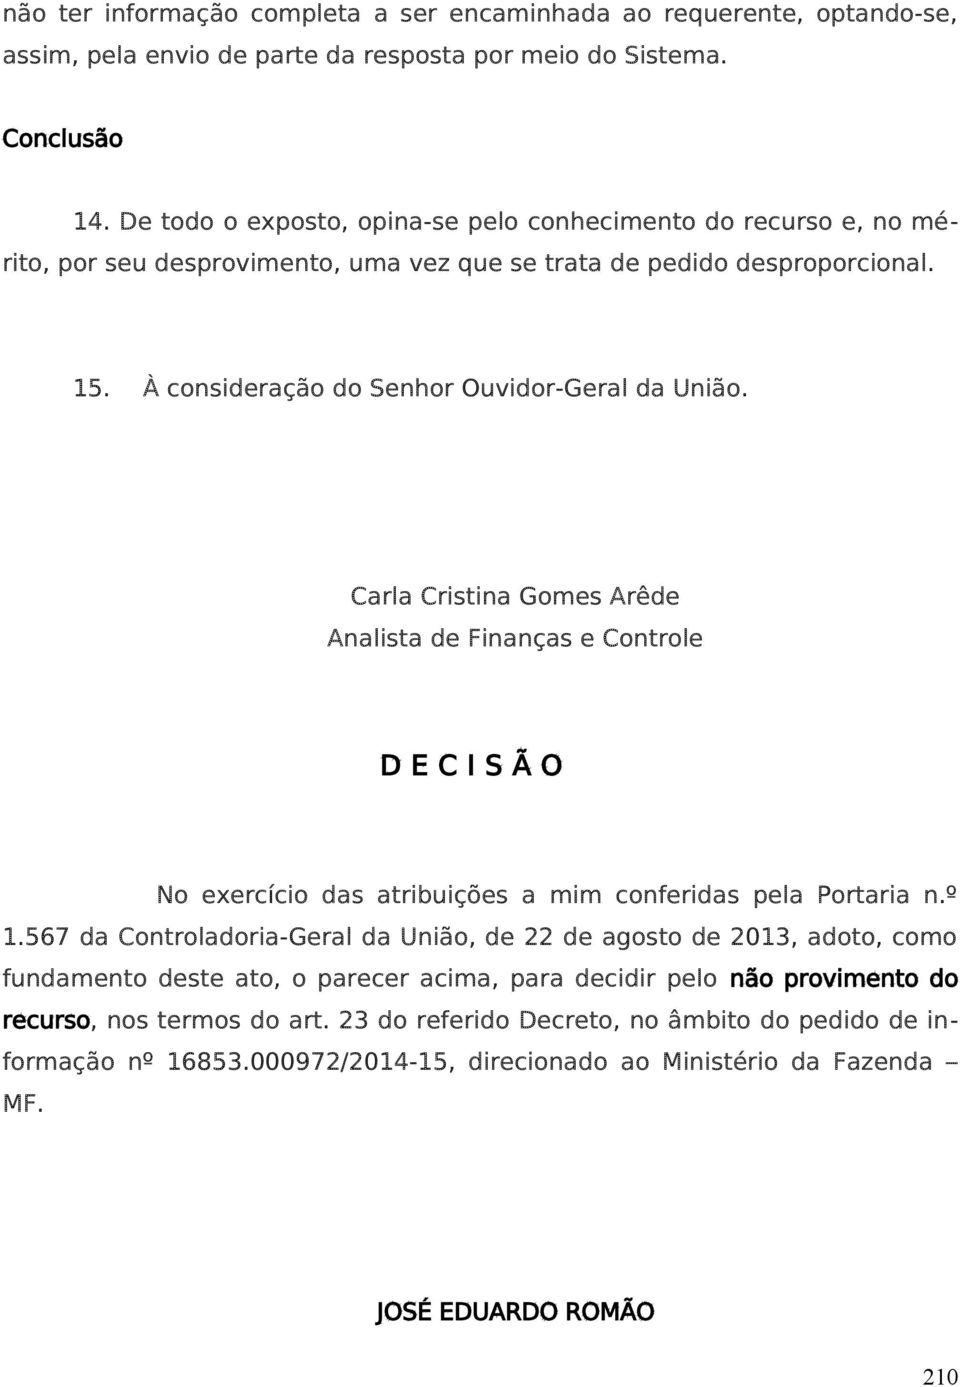 Carla Cristina Gomes Arêde Analista de Finanças e Controle D E C I S Ã O No exercício das atribuições a mim conferidas pela Portaria n.º 1.